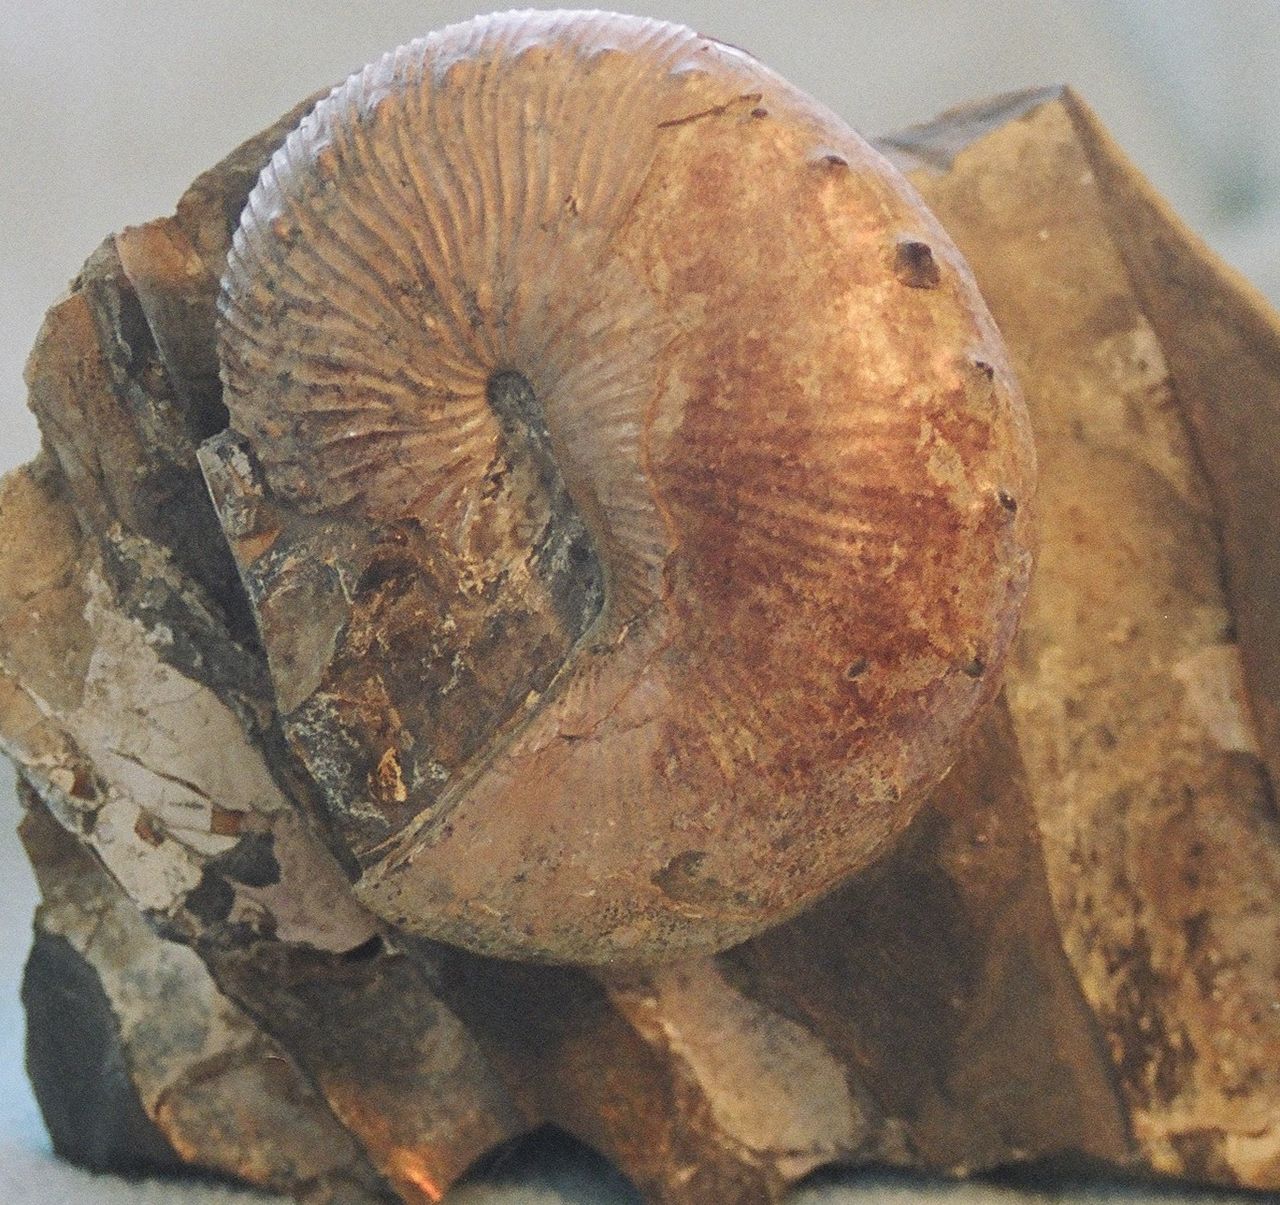 Fosilie amonita rodu Hoploscaphites, jednoho z několika zástupců této skupiny, kterým se podařilo přežít do paleocénu. Zkameněliny potenciálních raně kenozoických exemplářů byly objeveny na území Dánska, Holandska, Spojených států amerických a pravdě